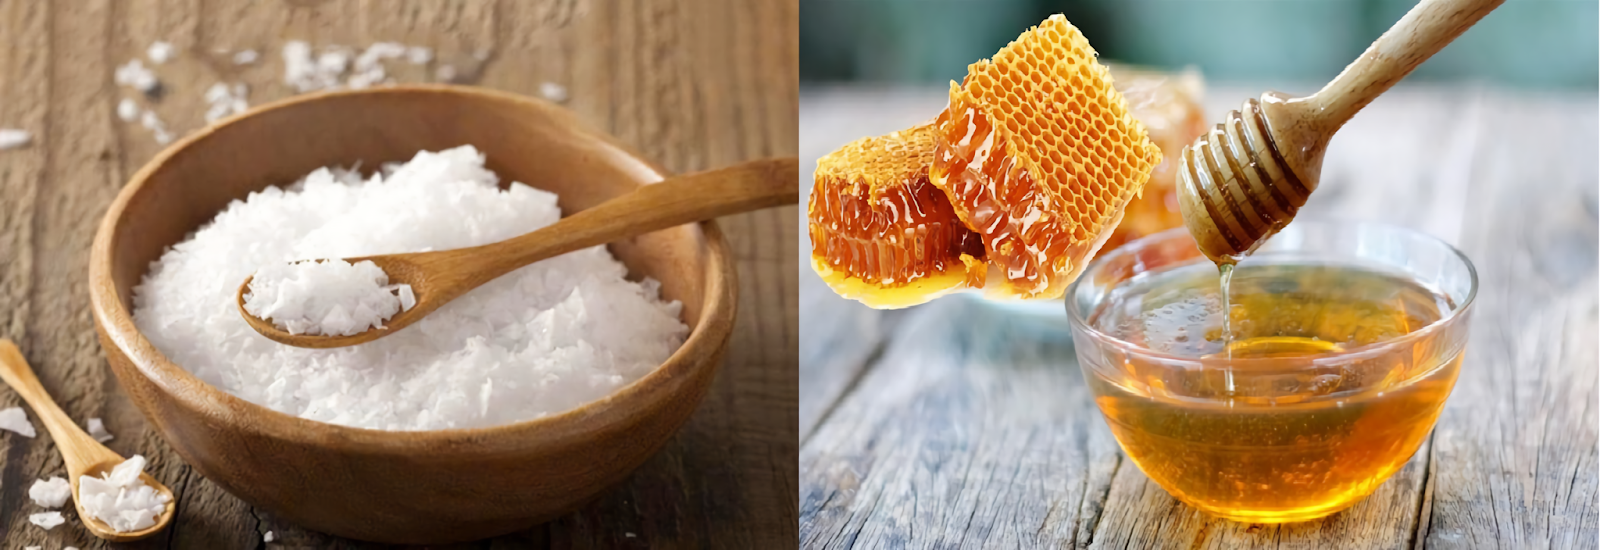 Sử dụng hỗn hợp muối biển và mật ong